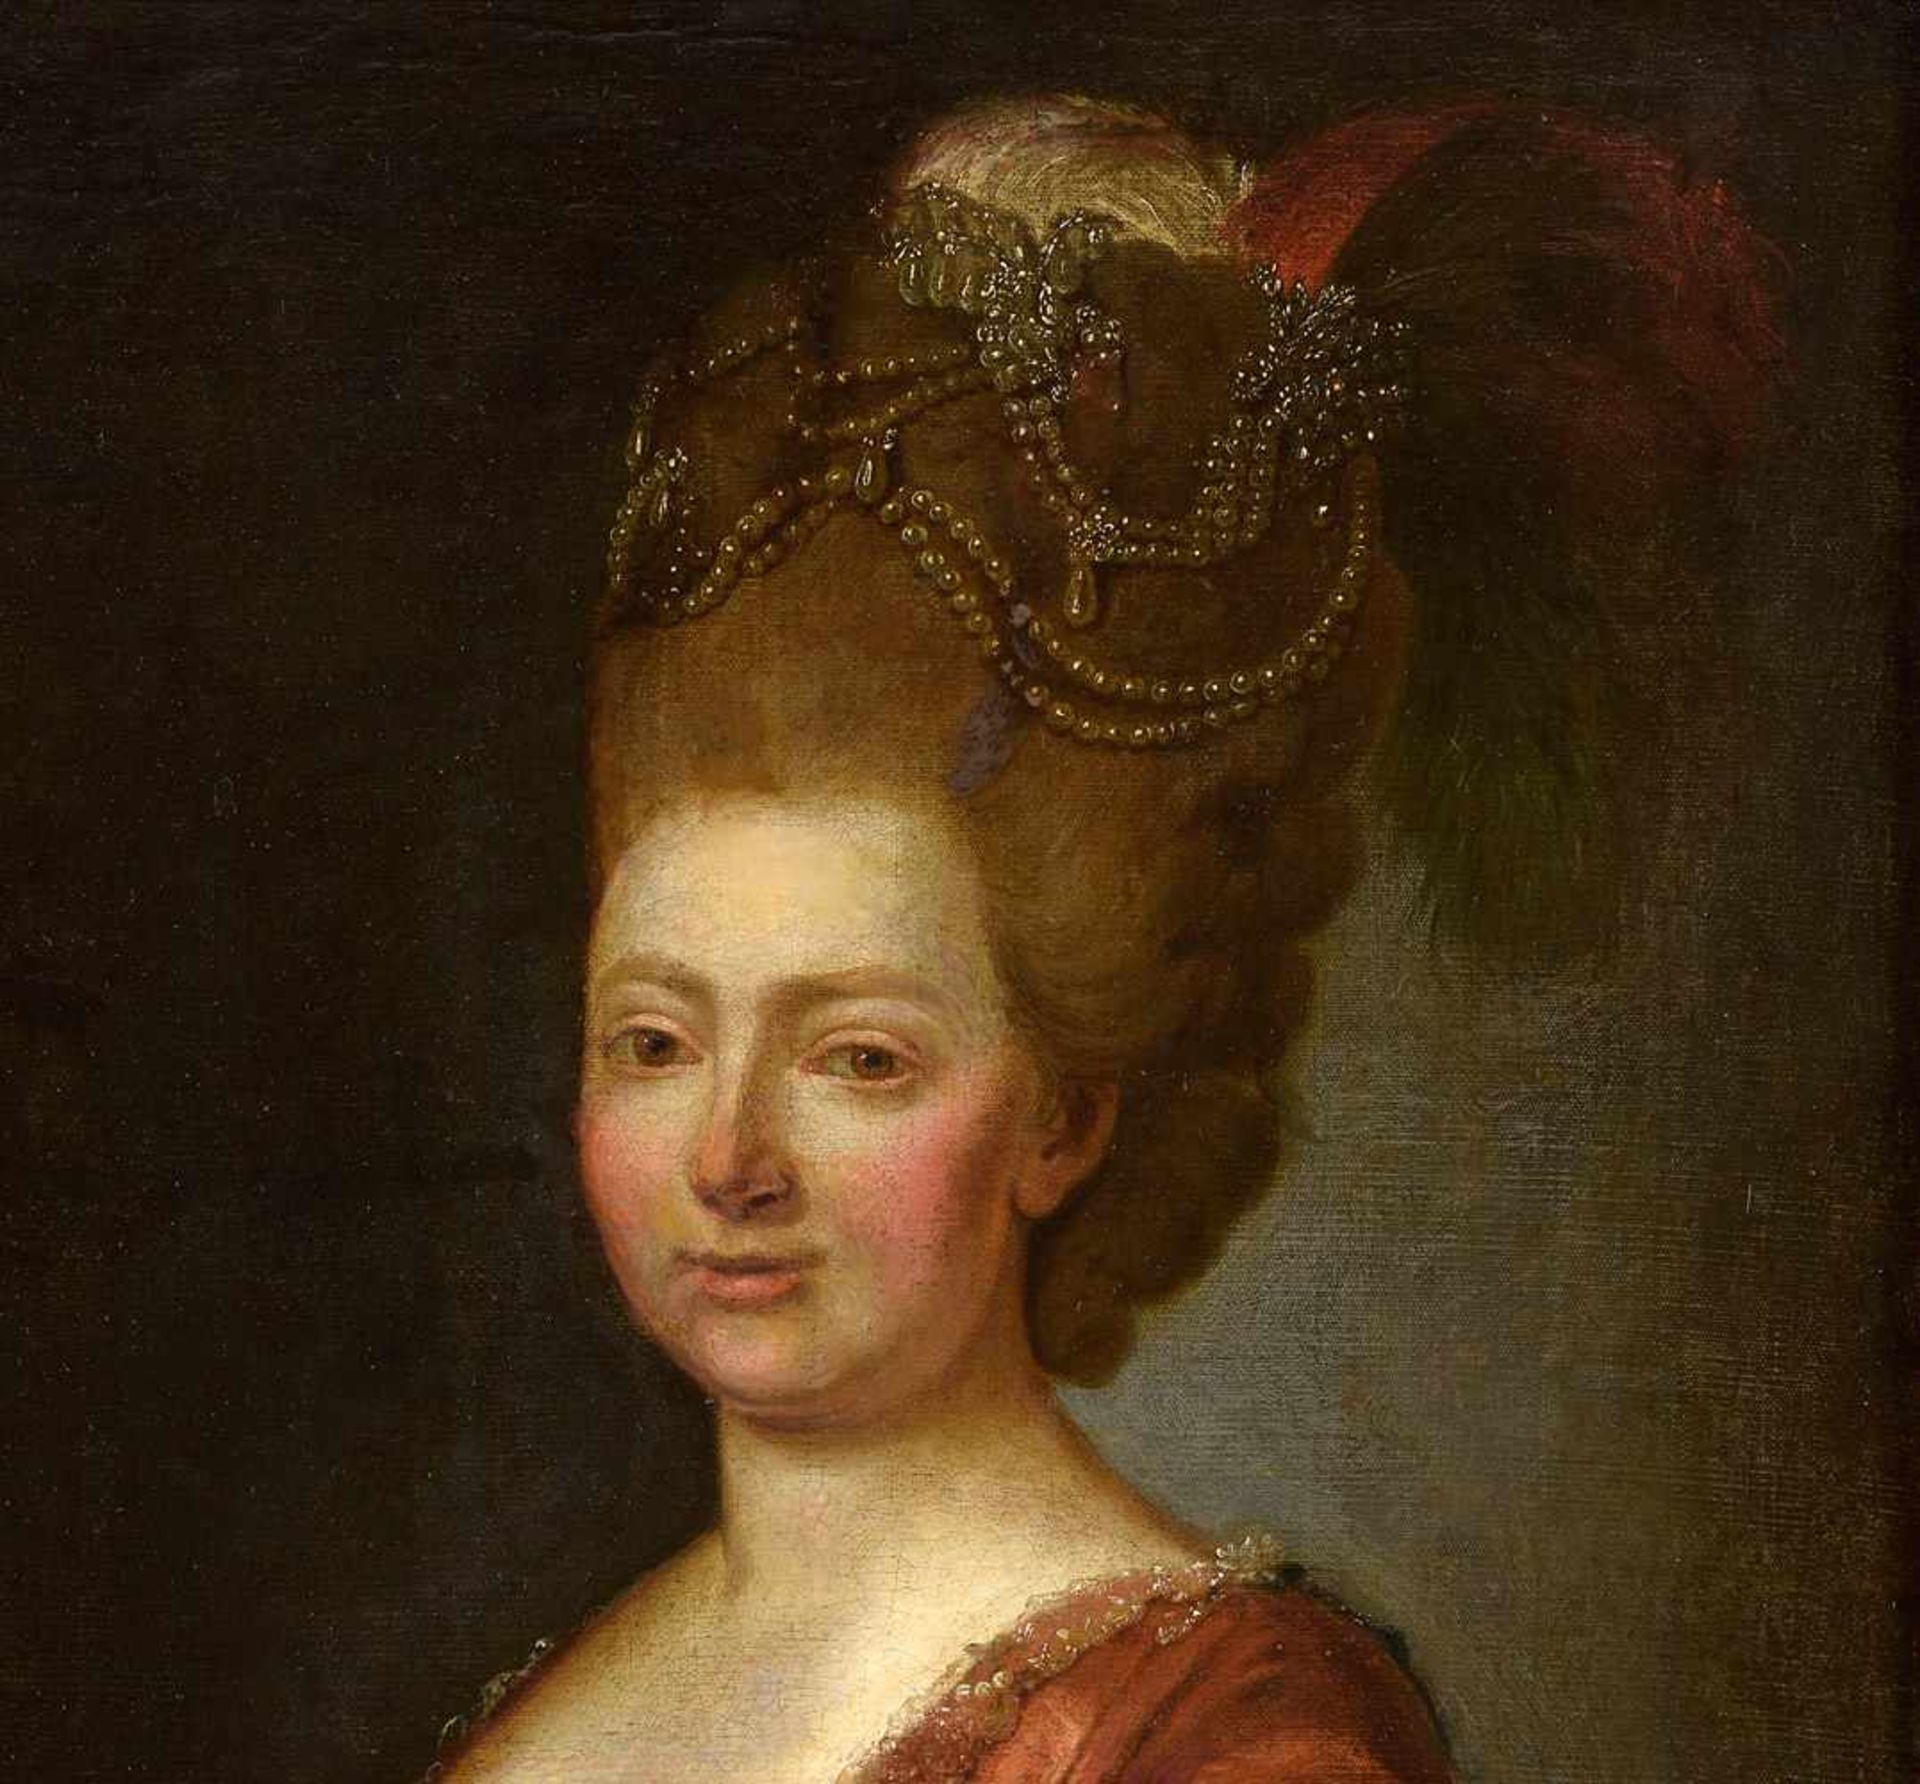 Russischer Meister 18. Jhdt.Portrait Maria Fedorowna Romanowa.Öl/Lwd./doubl., 82 x 62 cm. - Bild 3 aus 3